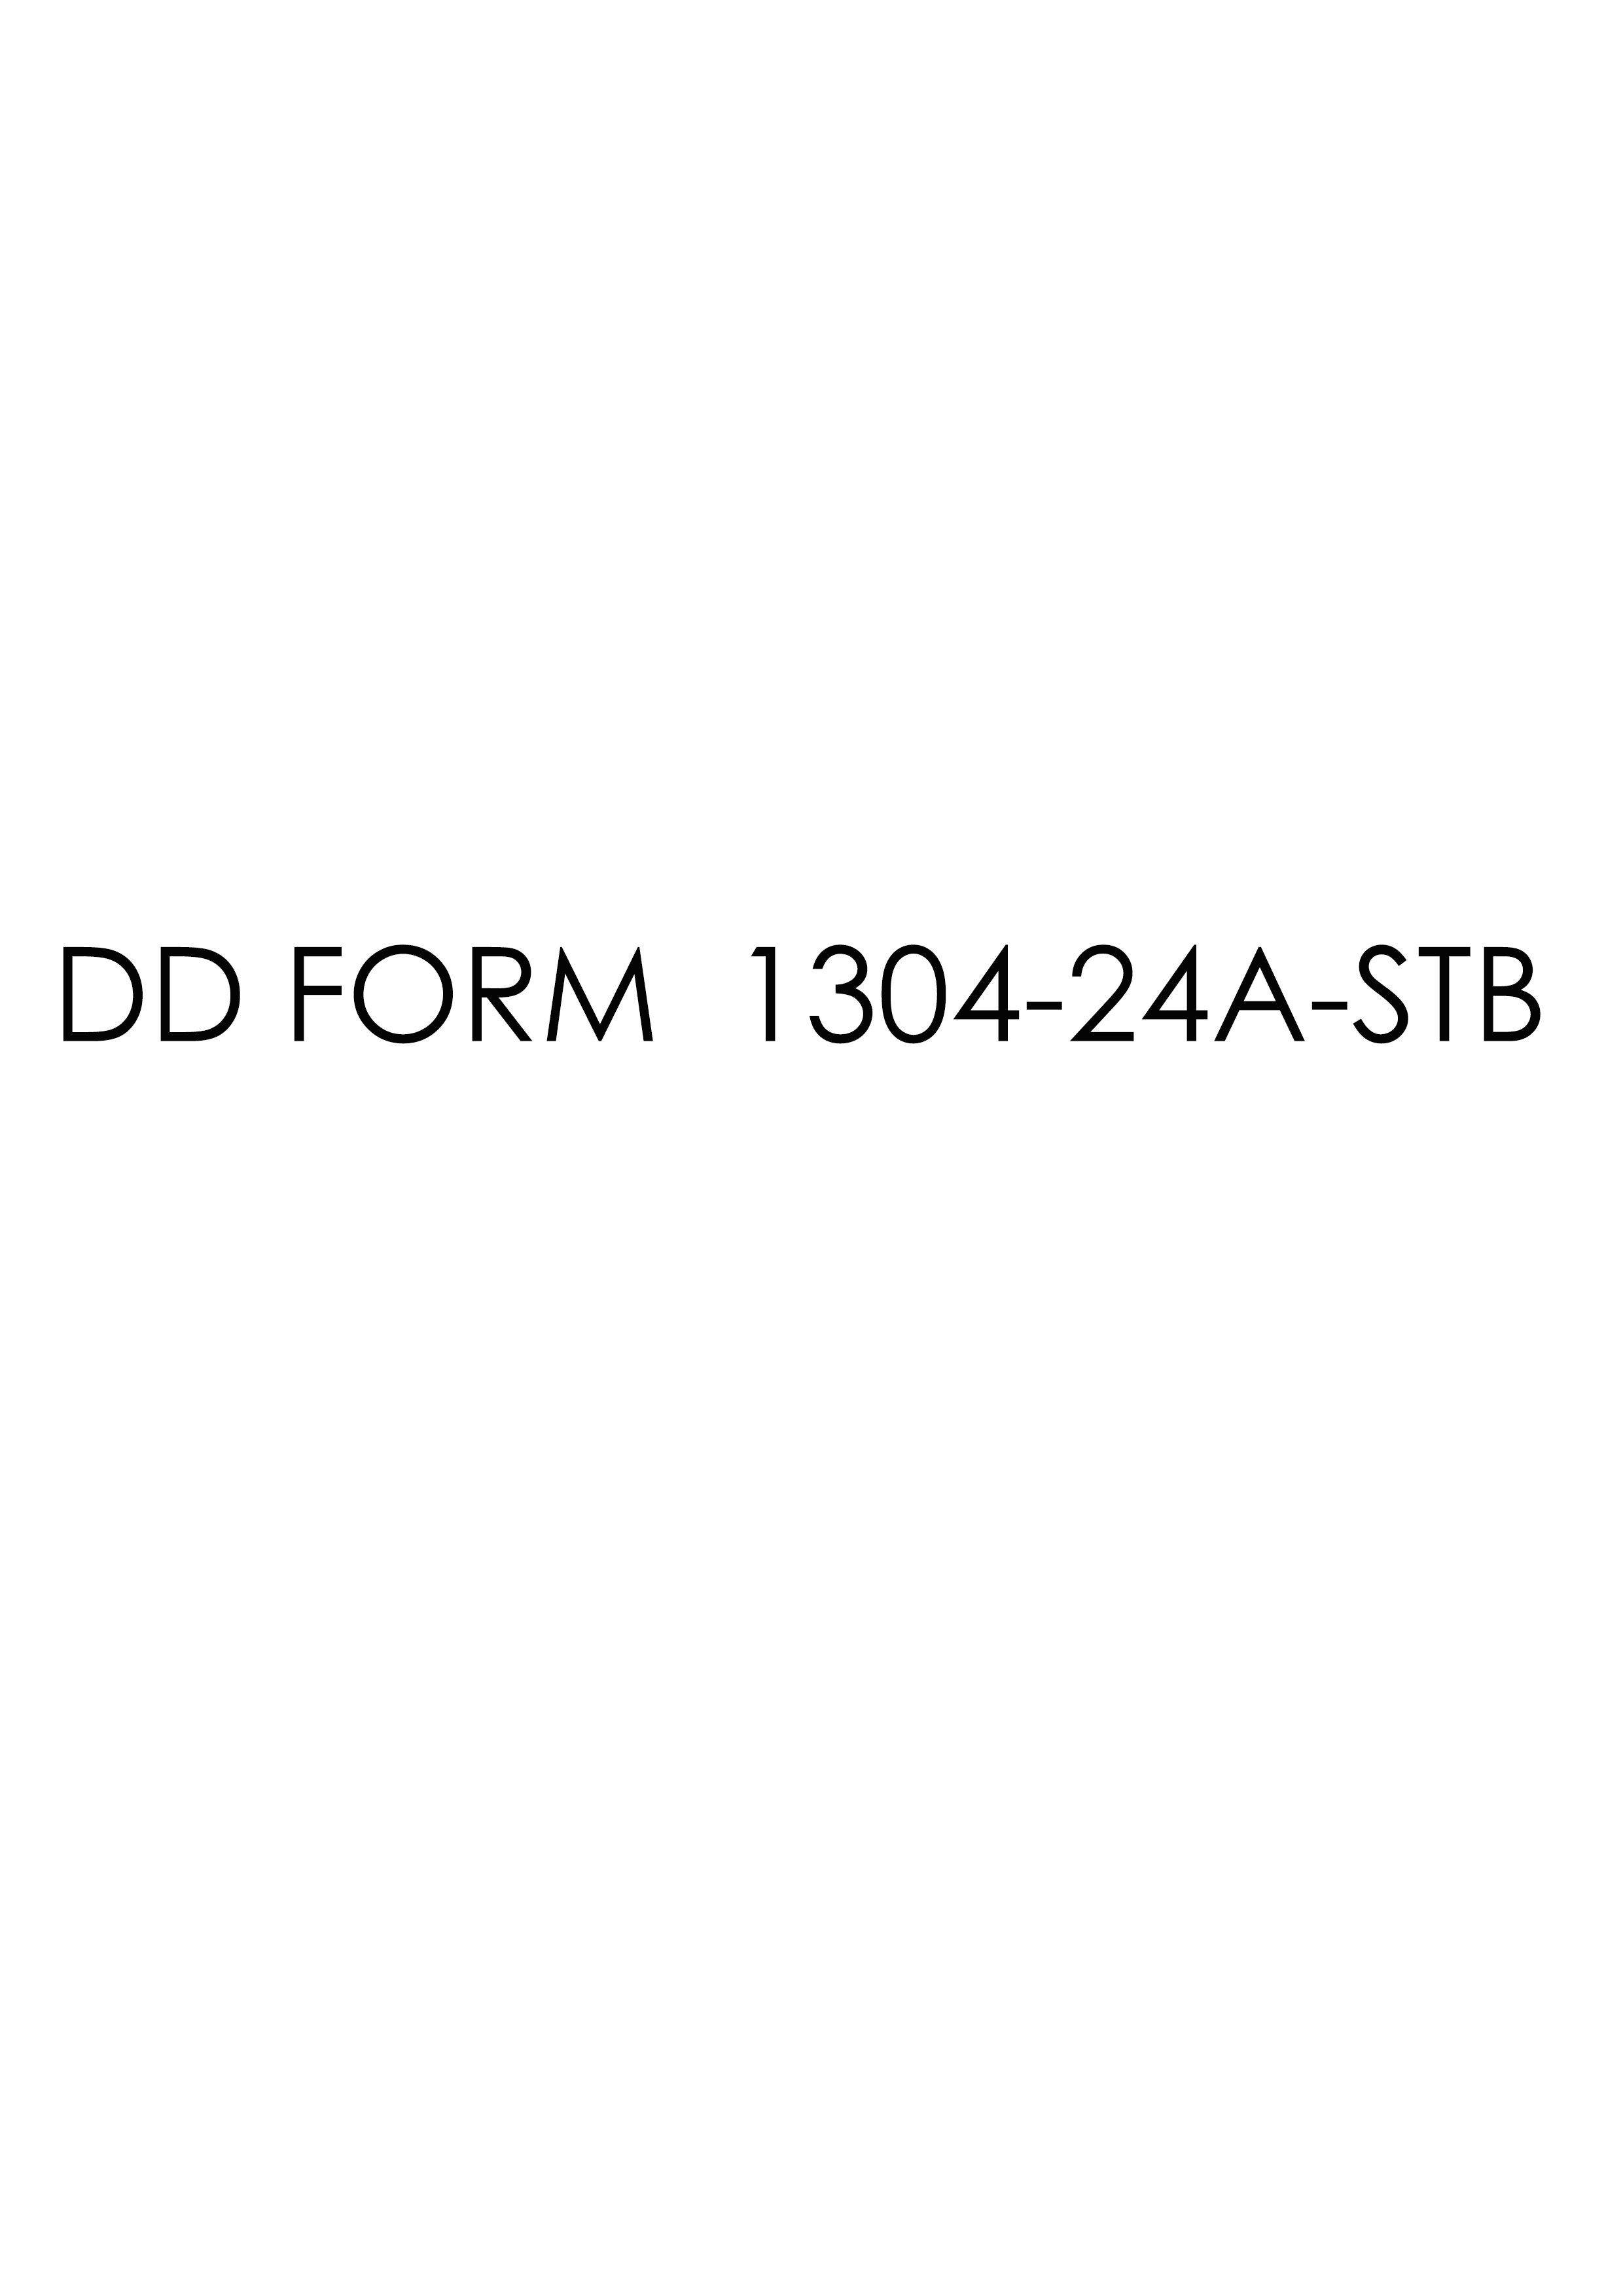 Download dd 1304-24A-STB Form